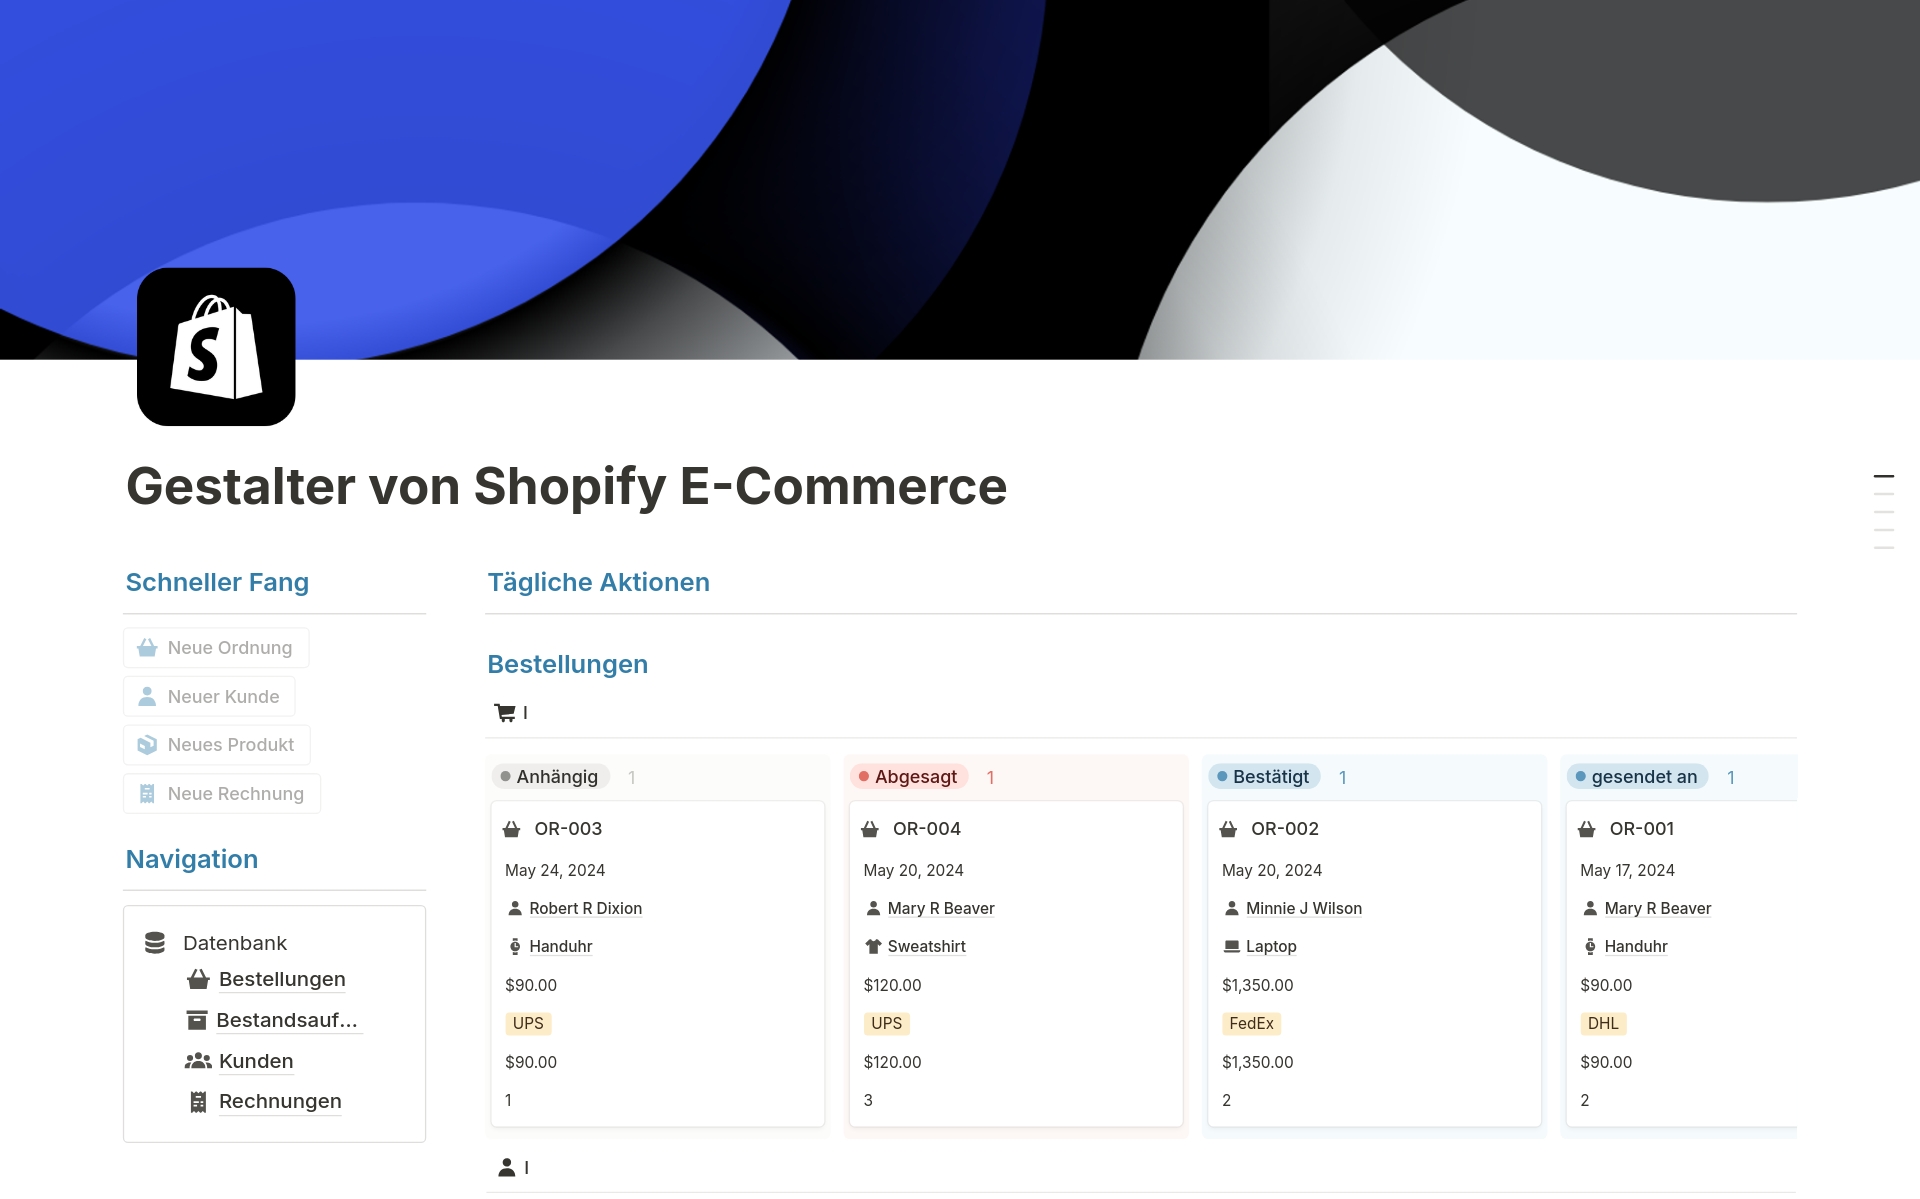 Uma prévia do modelo para Gestalter von Shopify E-Commerce